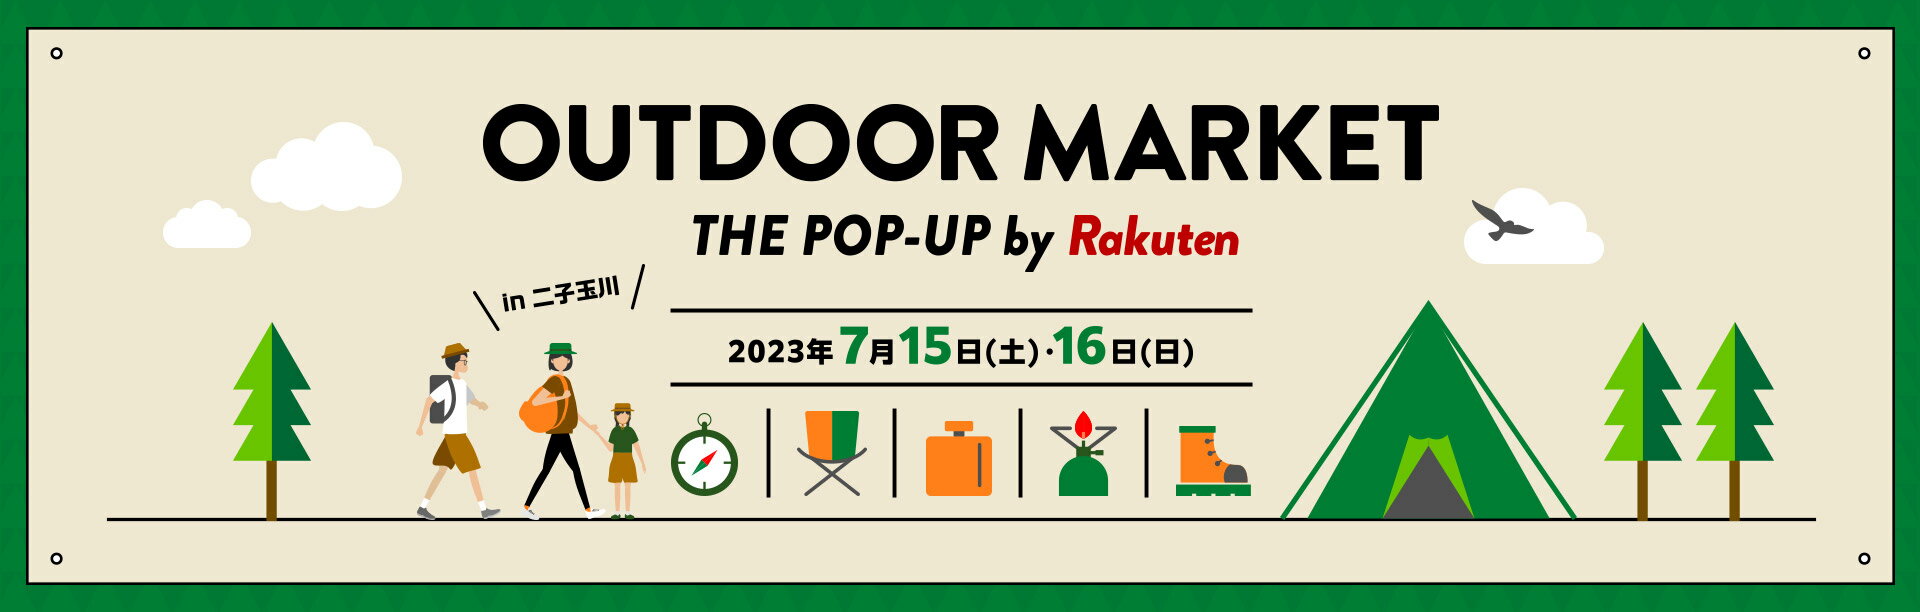 OUTDOOR MARKET THE POP-UP By Rakuten